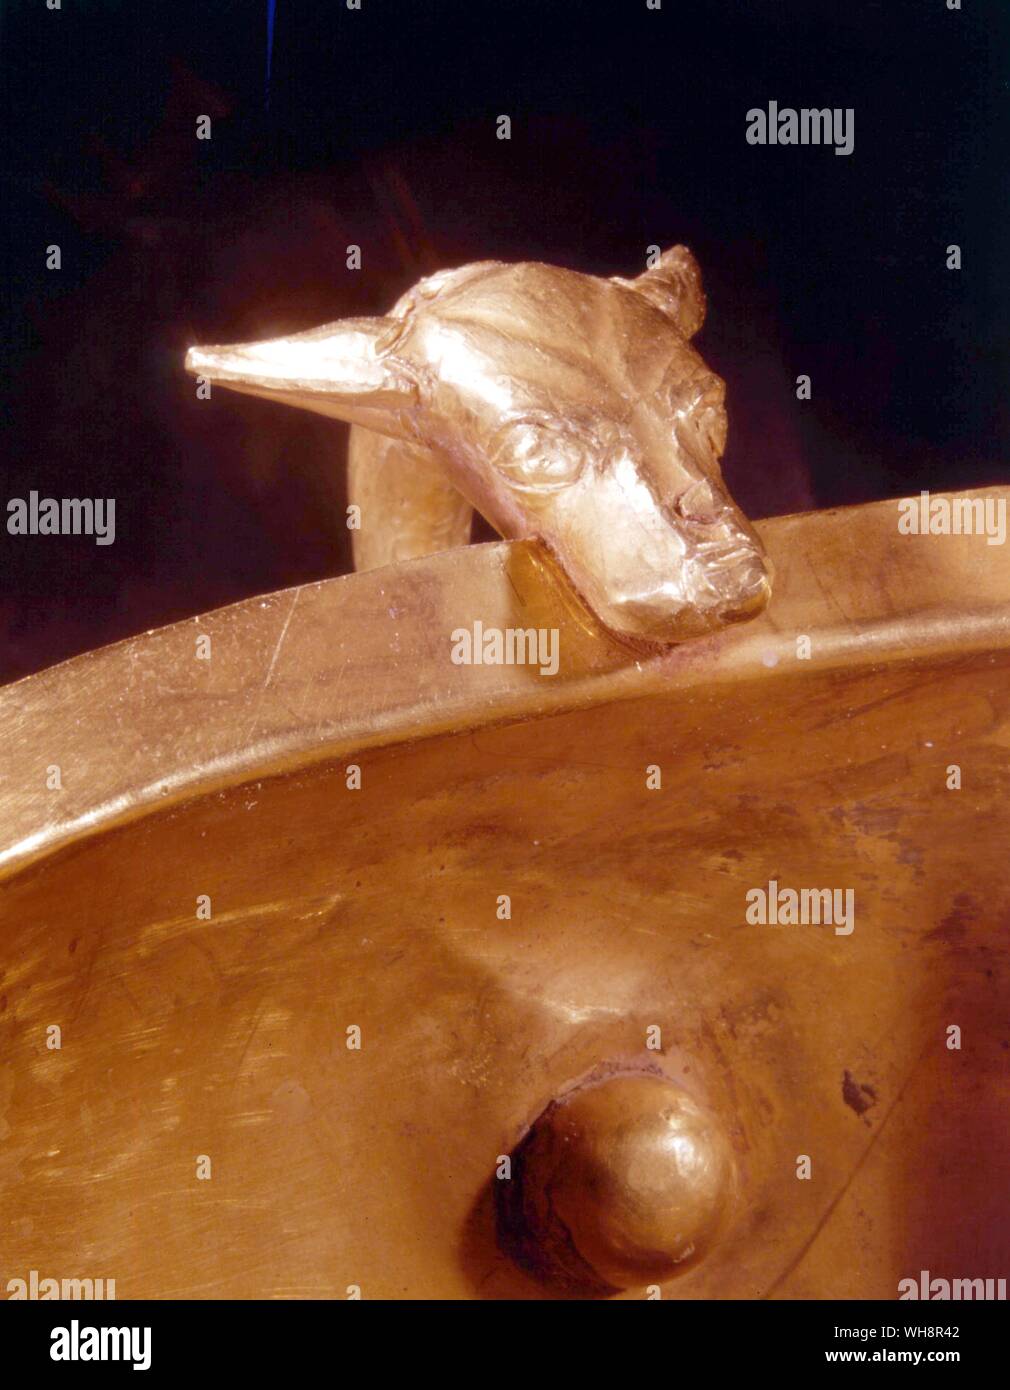 Piqûres d'or de l'or. Tête de chien de la poignée coupe potable. De l'Acropole de Mycènes, 16ème siècle avant J.-C. Banque D'Images